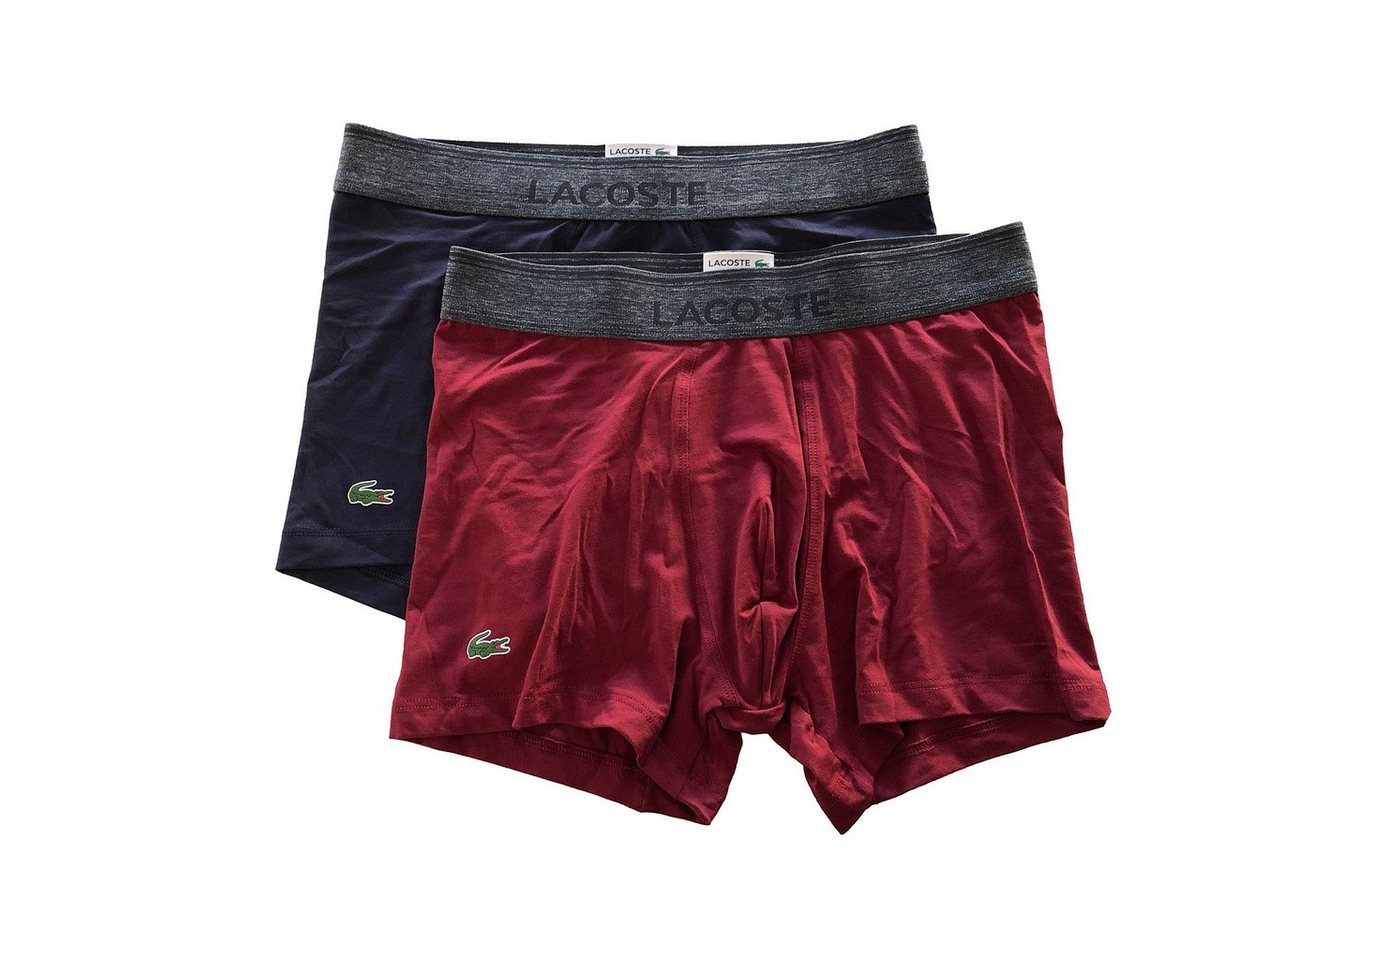 Lacoste Trunk Cotton Modal Serie (Doppelpack, 2-St., 2er-Pack) Baumwolle Modal Unterhosen Shorts kurzes Bein im Doppelpack von Lacoste